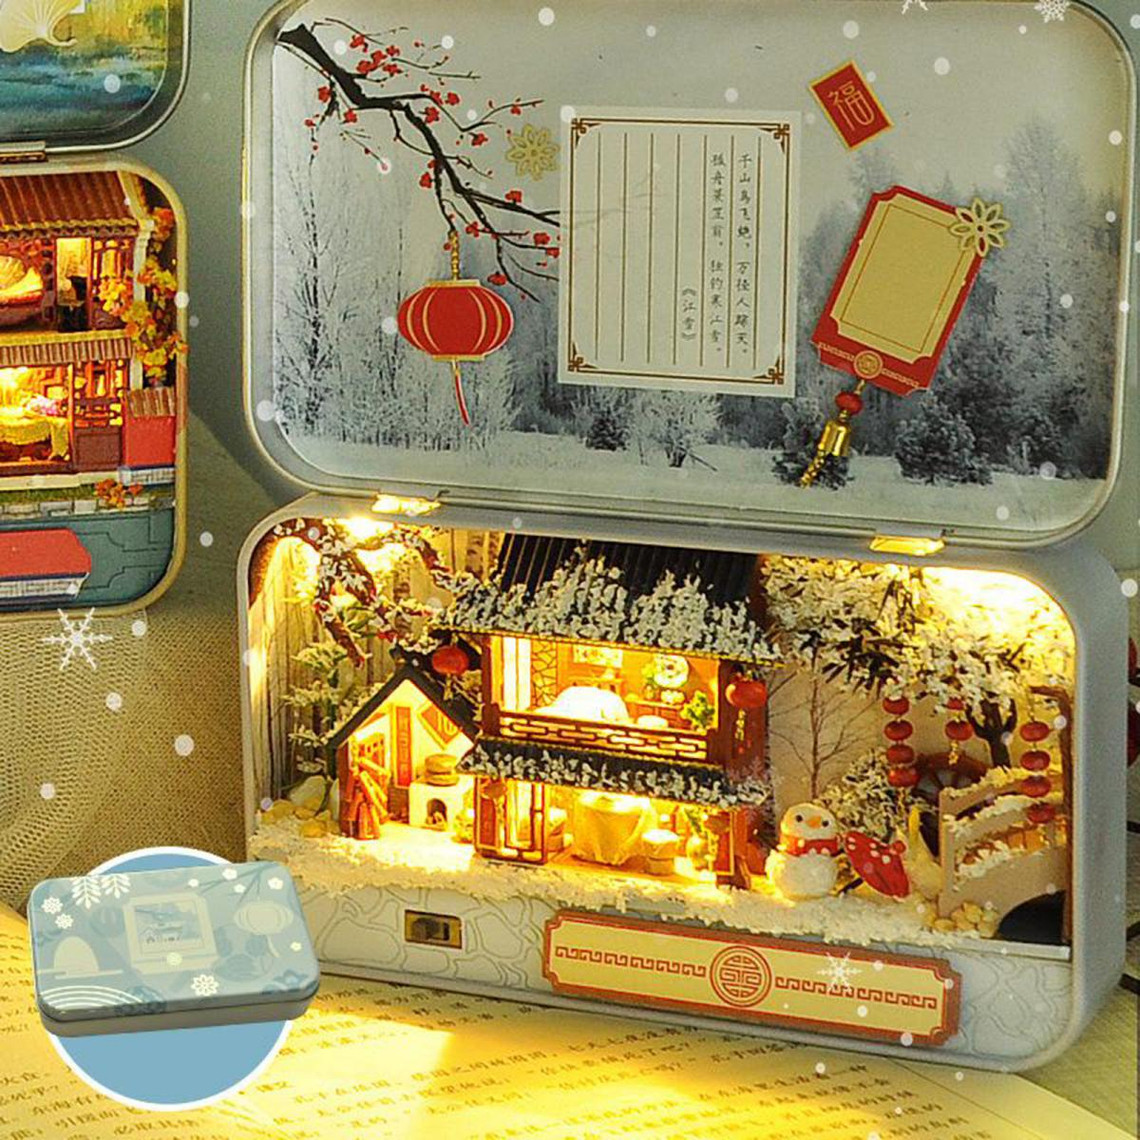 MAJOZ DIY Maisons de poupées 3D Dollhouse Miniature Kit avec LED ouet Puzzle Box Theatre Cadeau pour Anniversaire Cadeau Romantique,Fait à la Main 